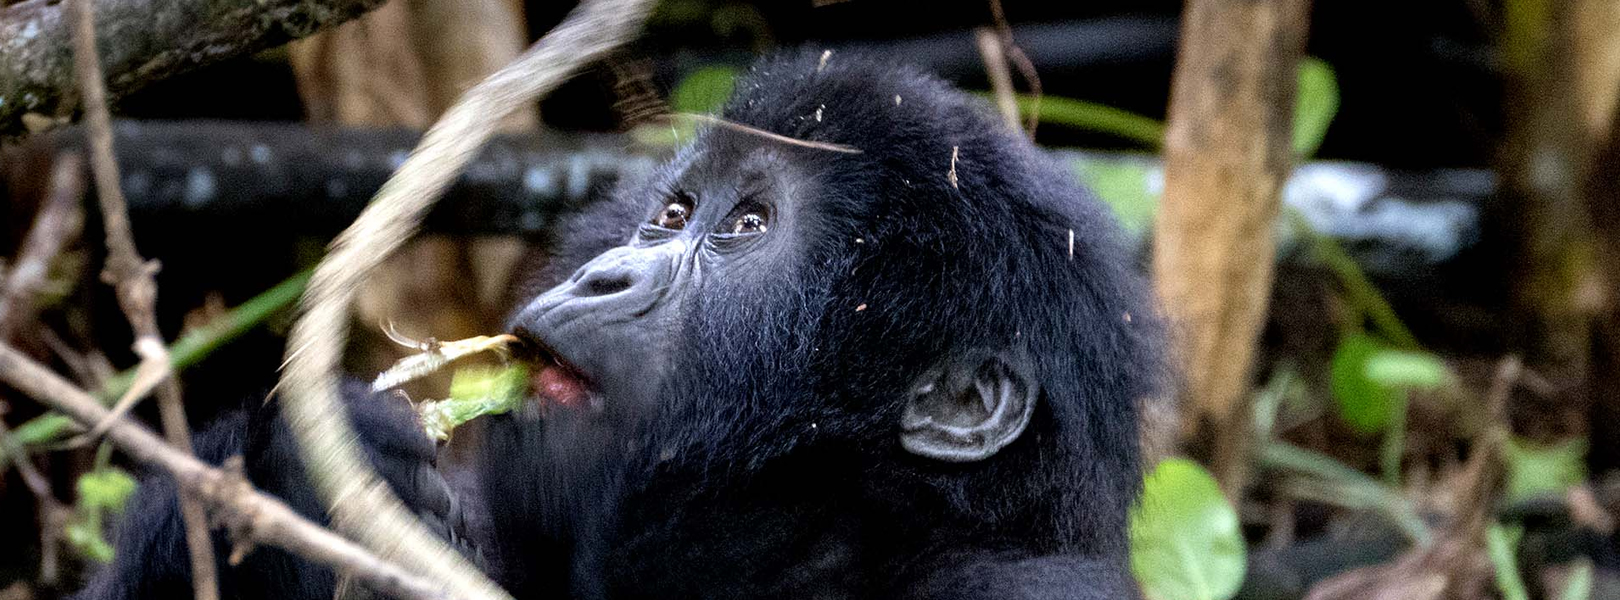 14-Days Uganda Gorilla Tracking And Wildlife Adventure Safari